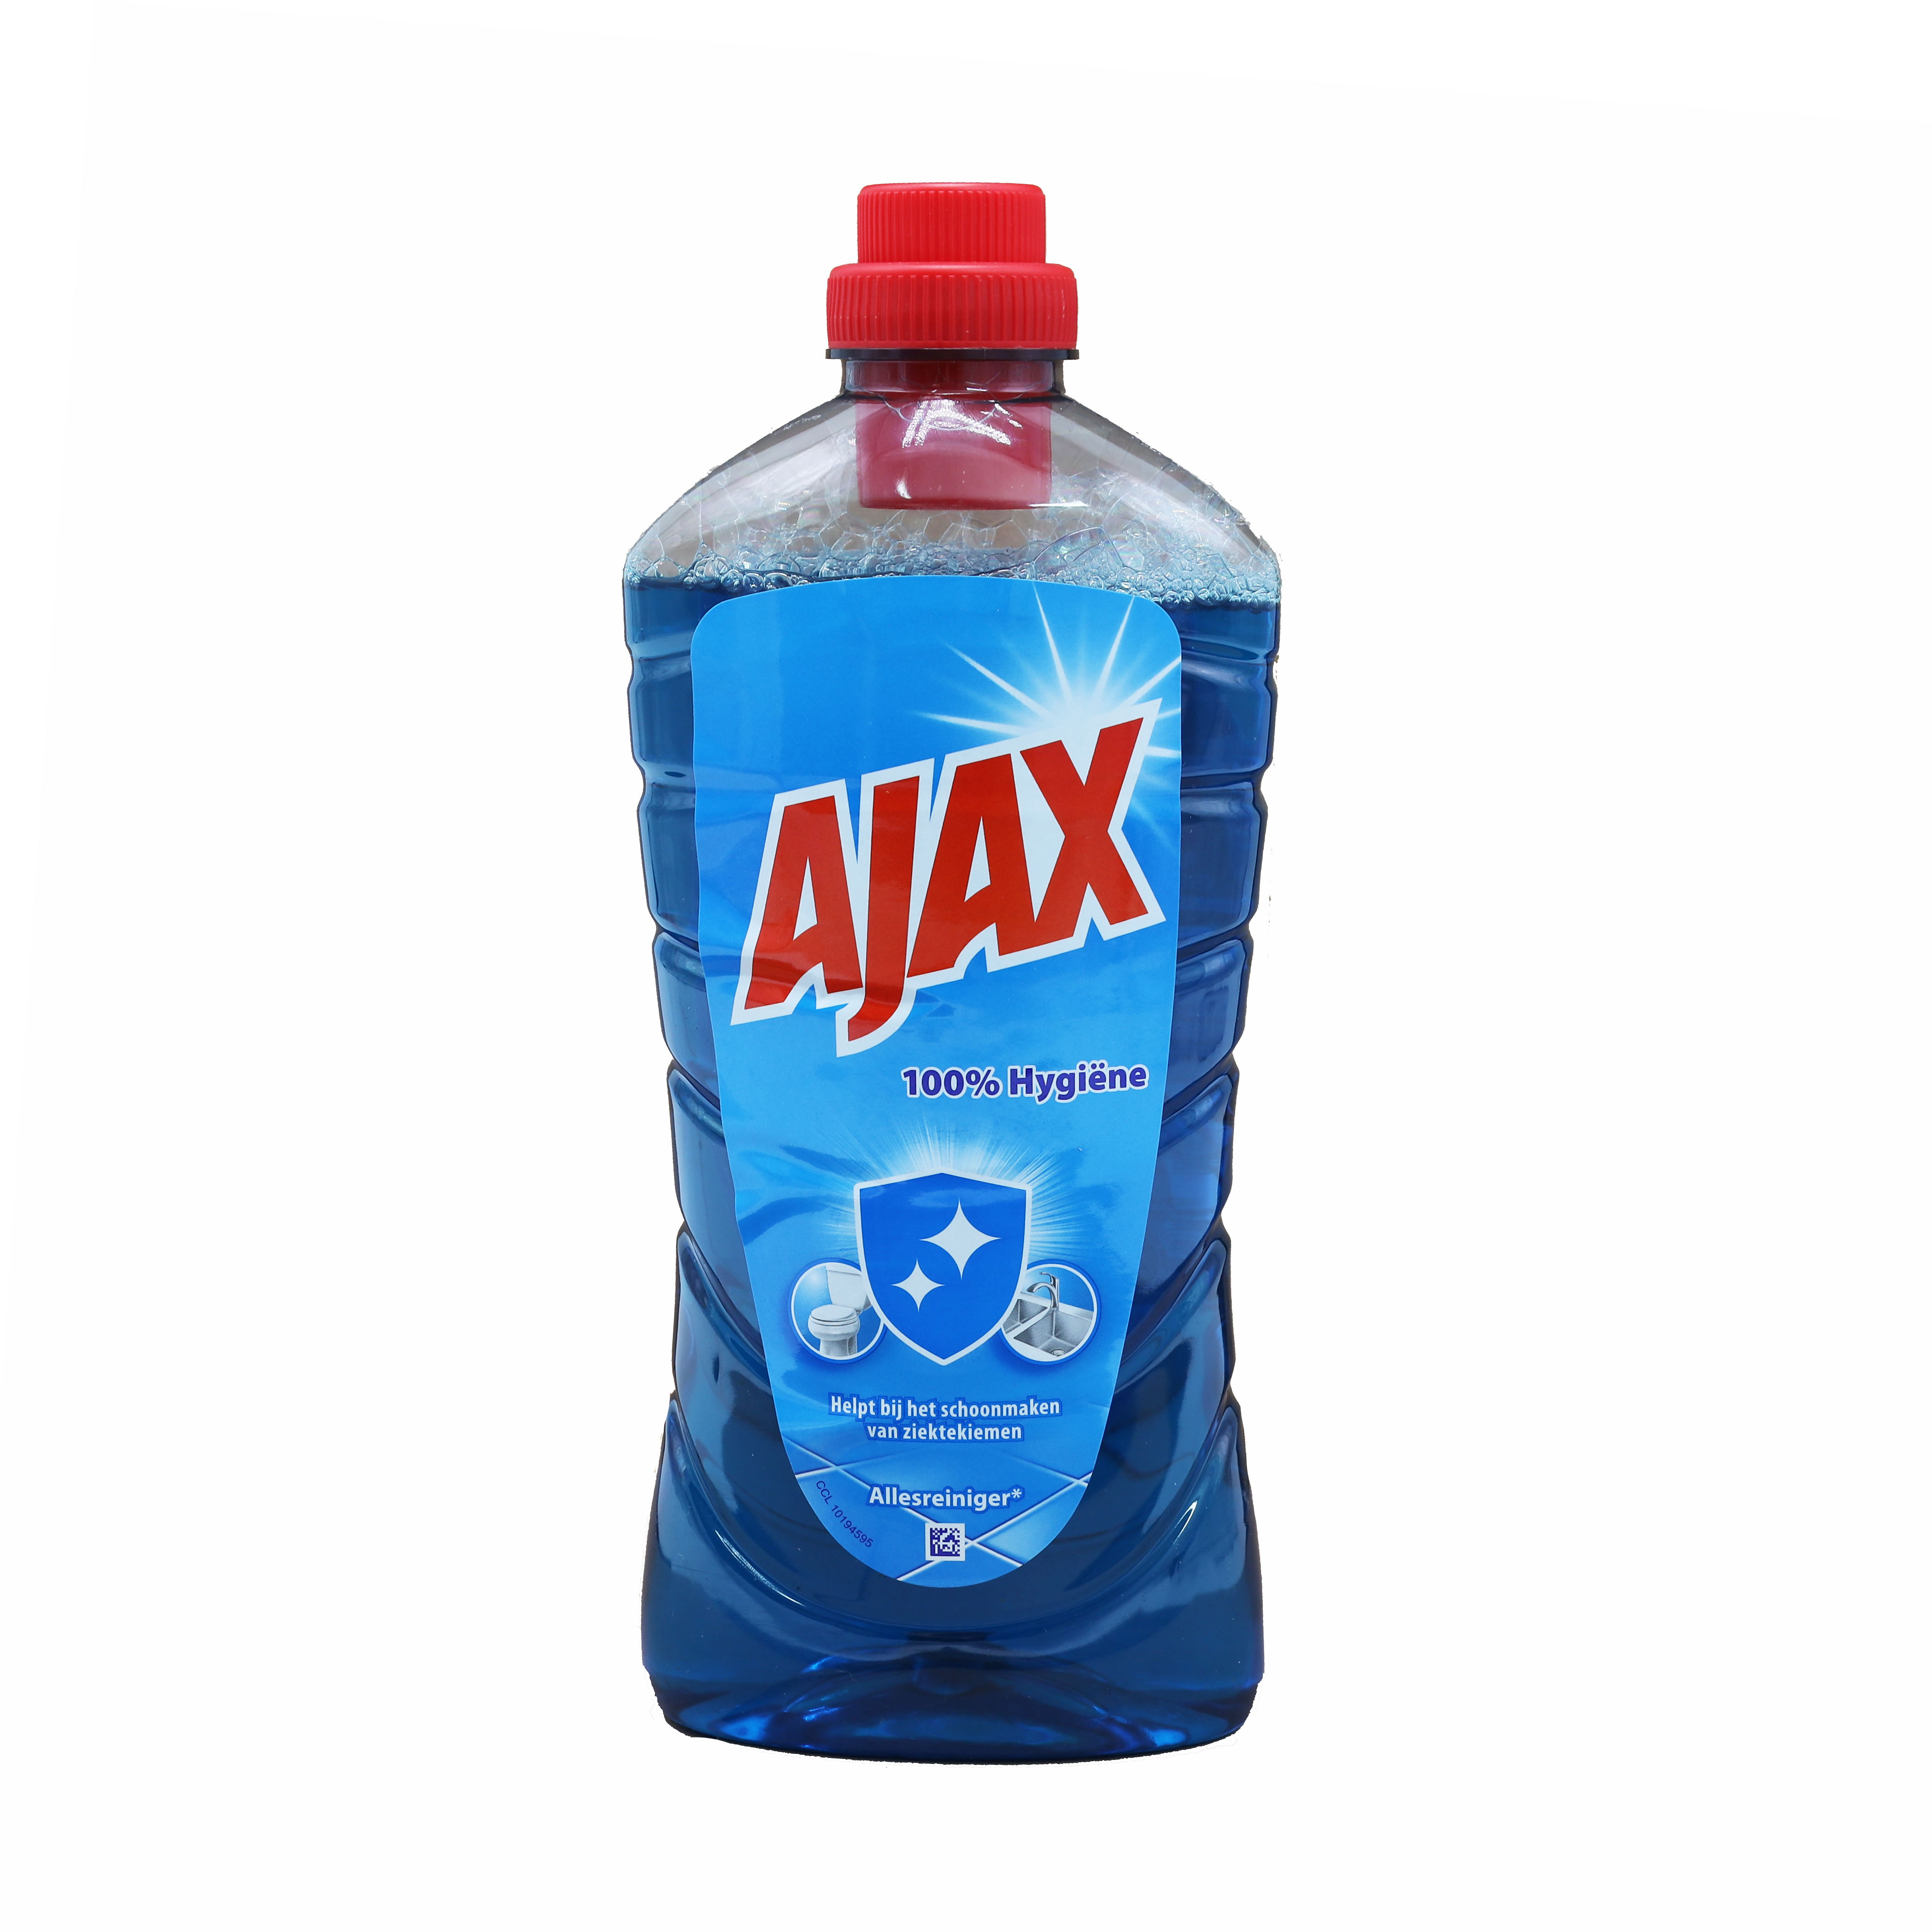 Ajax Allzweckreiniger 1L 100% Hygiene